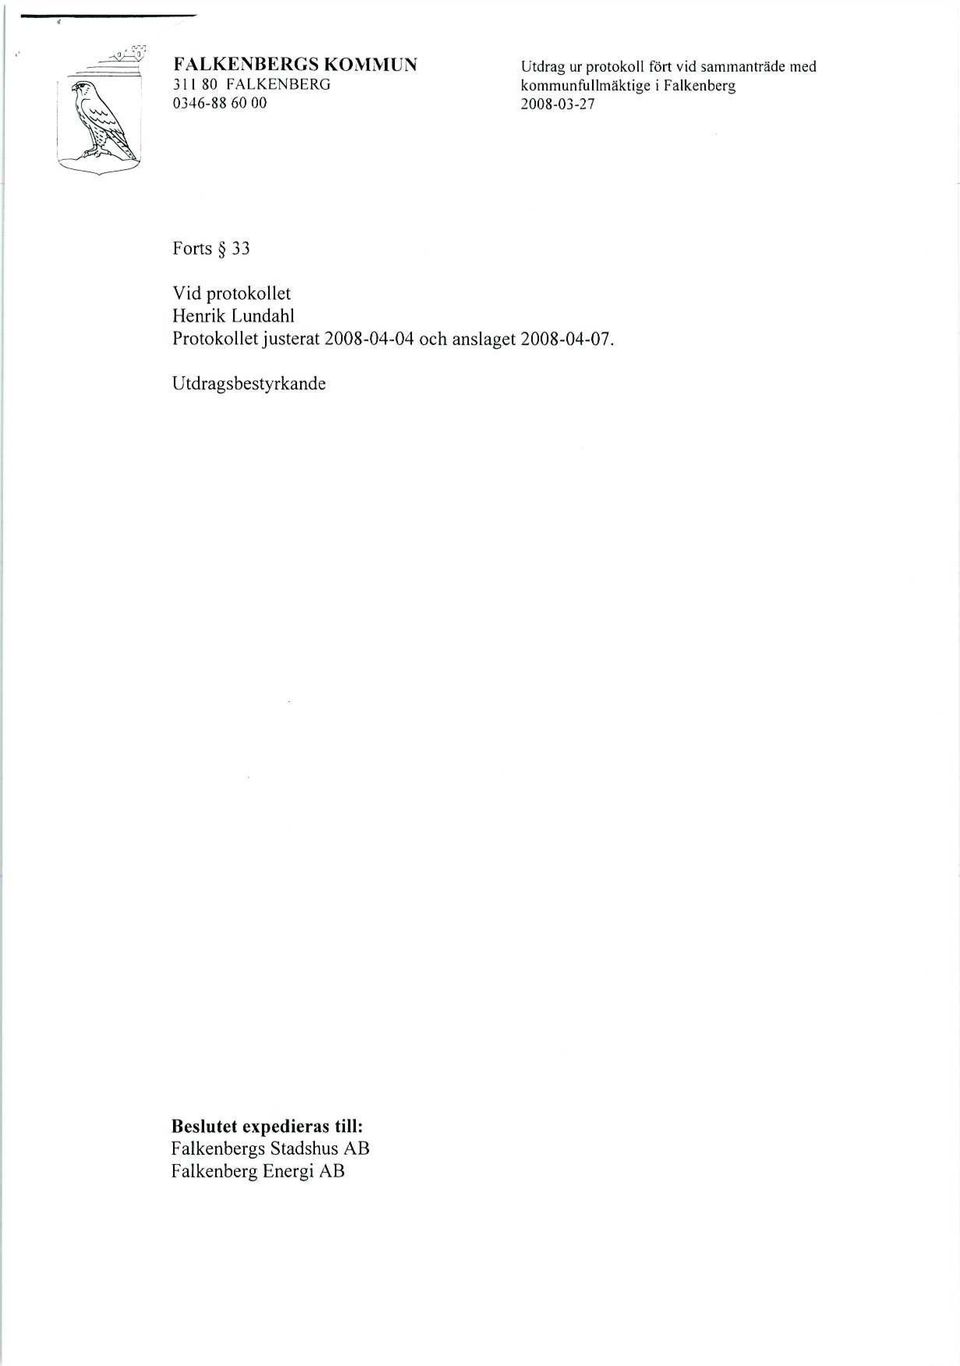 protokollet Henrik Lundahl Protokollet justerat 2008-04-04 och anslaget